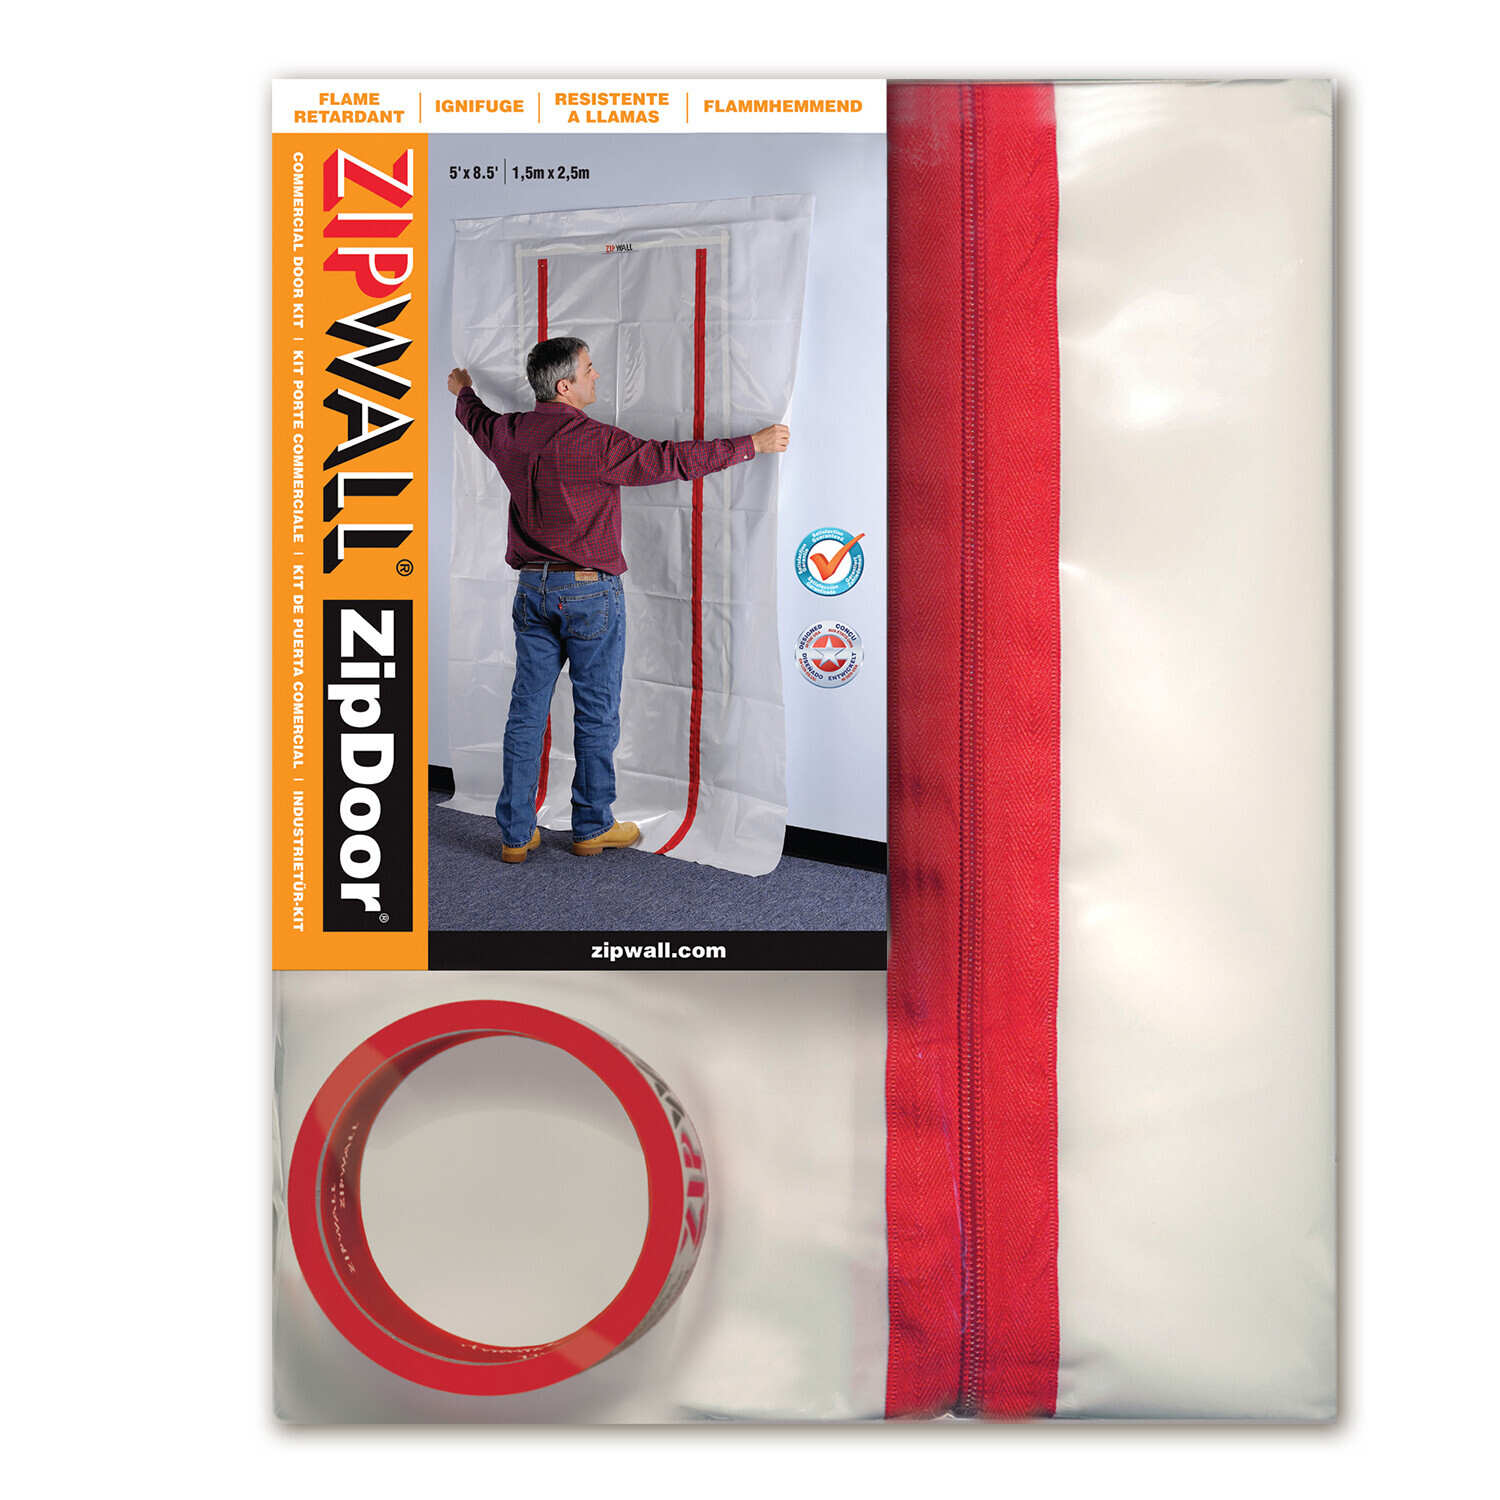 ZipDoor® (ZDC) Commercial Door Kit, 5' x 8.5', Flame Retardant